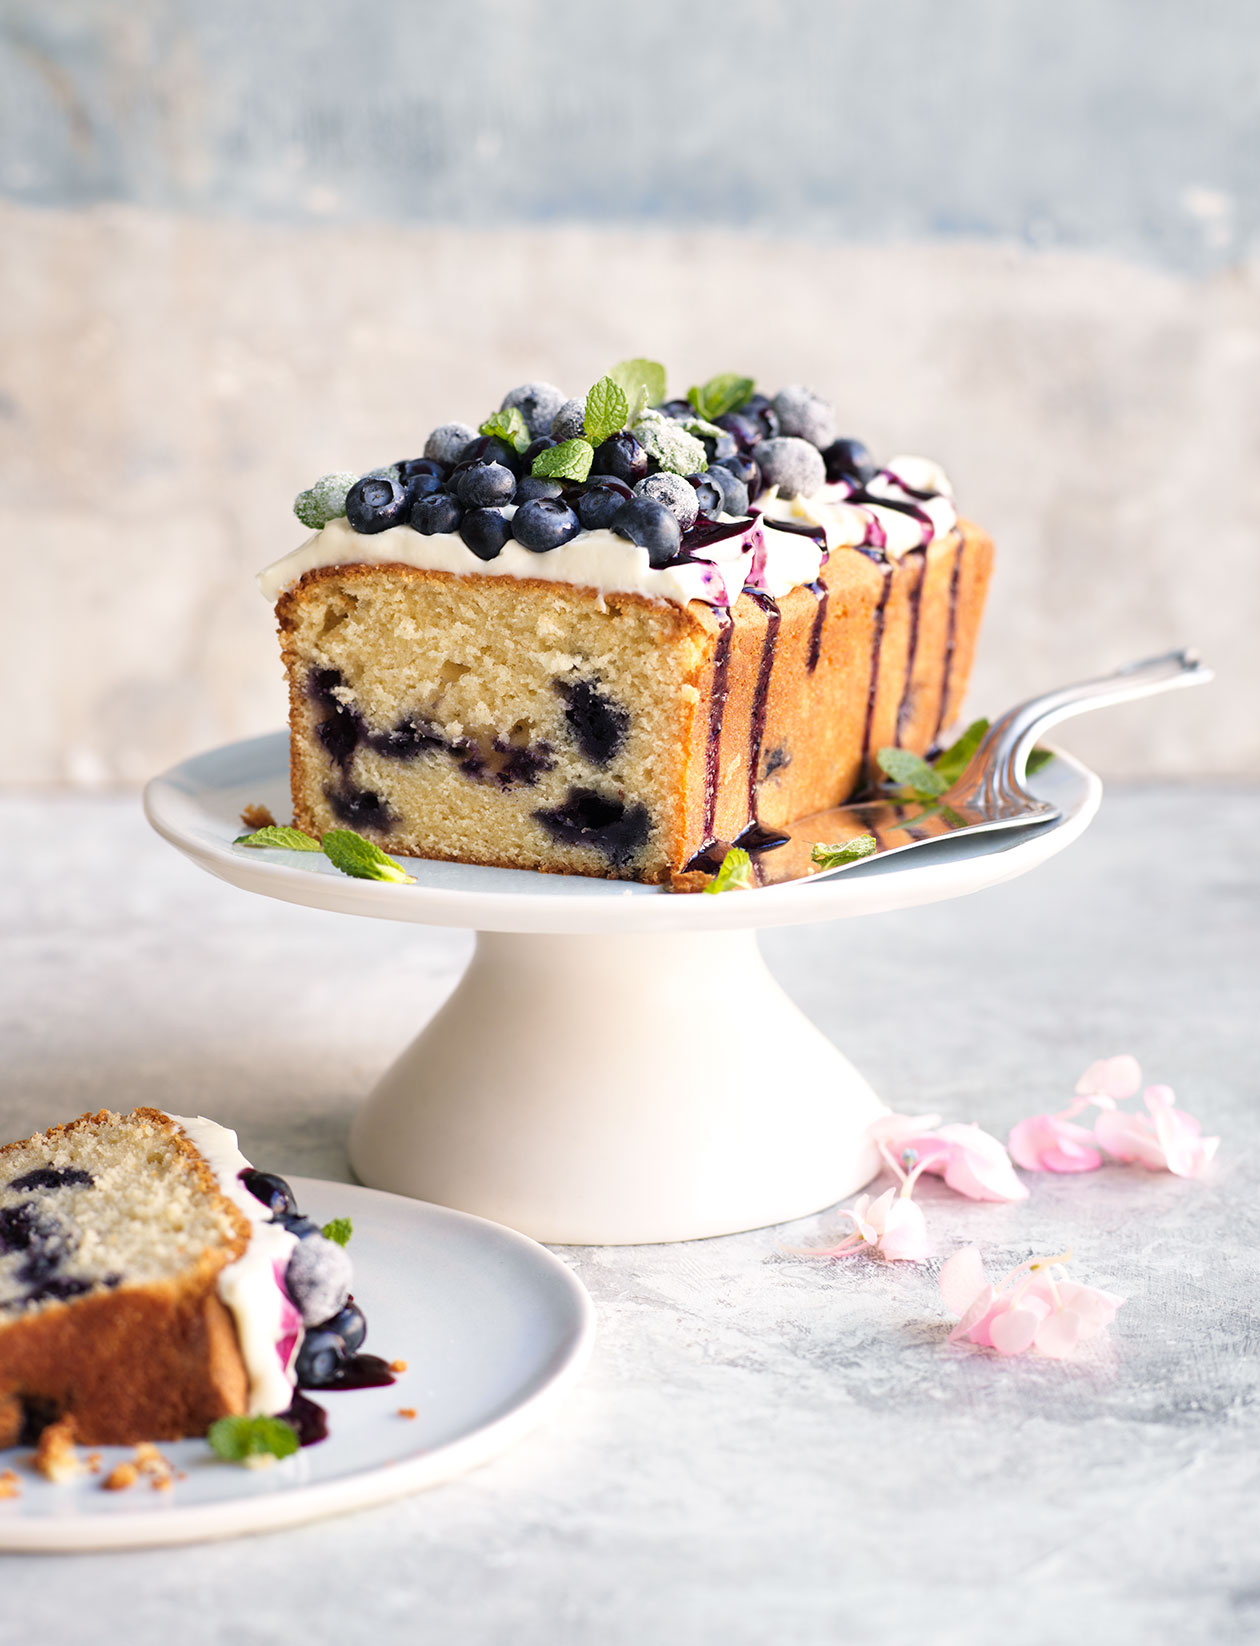 Best Lemon Blueberry Cake Recipe - How to Make Lemon Blueberry Cake